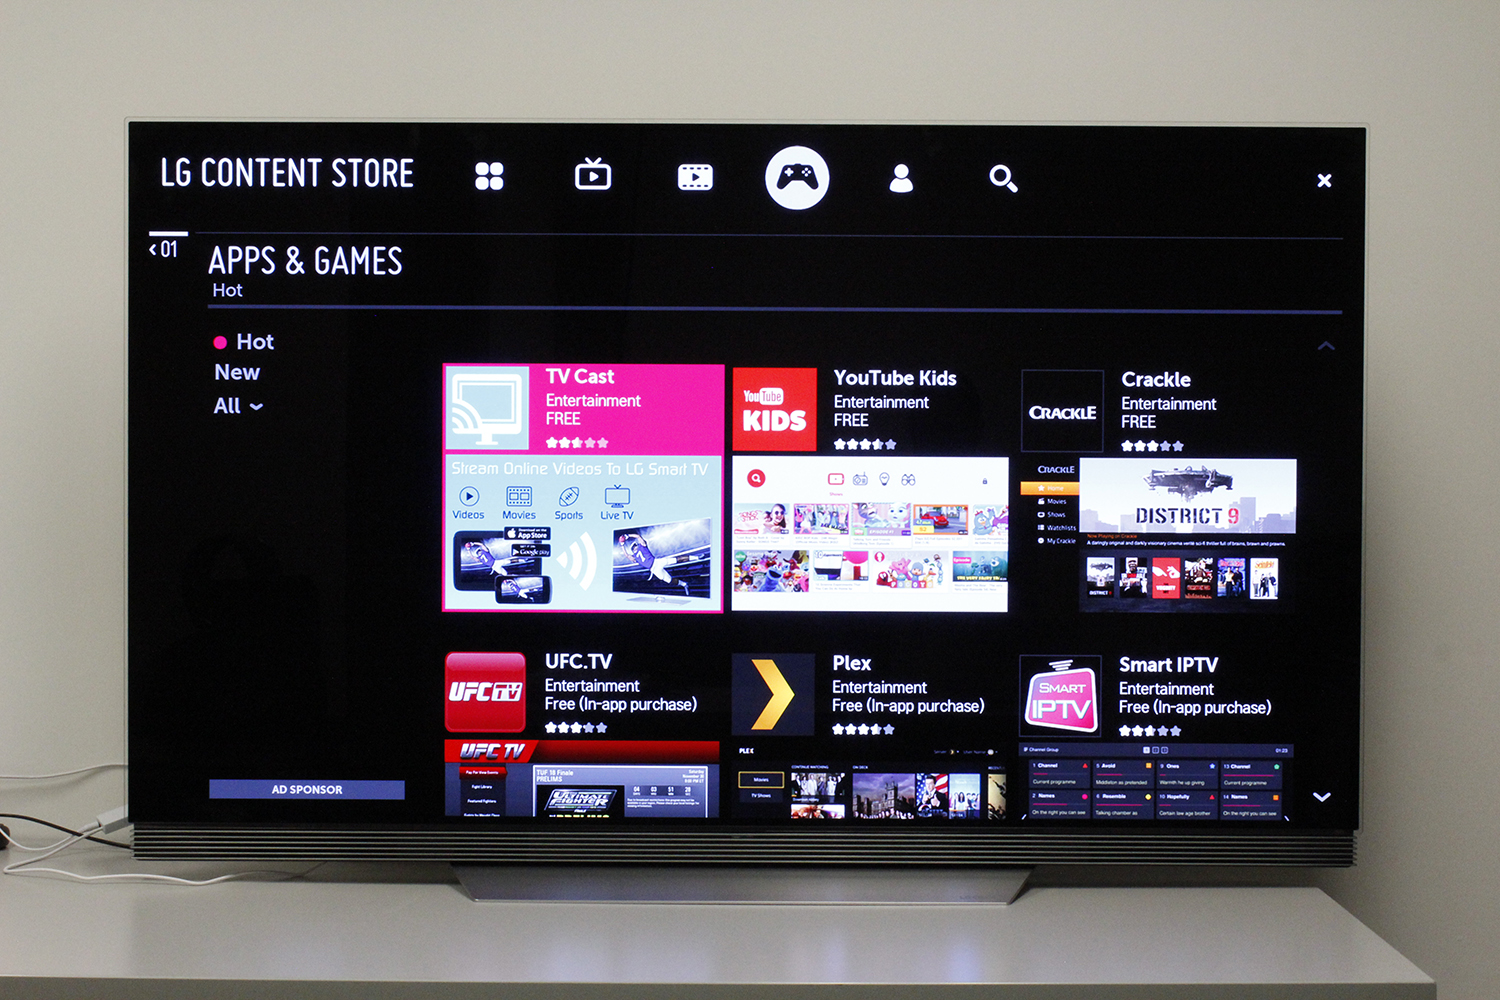 Программа lg tv. LG Store Smart TV. LG Smart Store TV приложения. Смарт ТВ LG content Store. Телевизор LG Smart TV WEBOS.